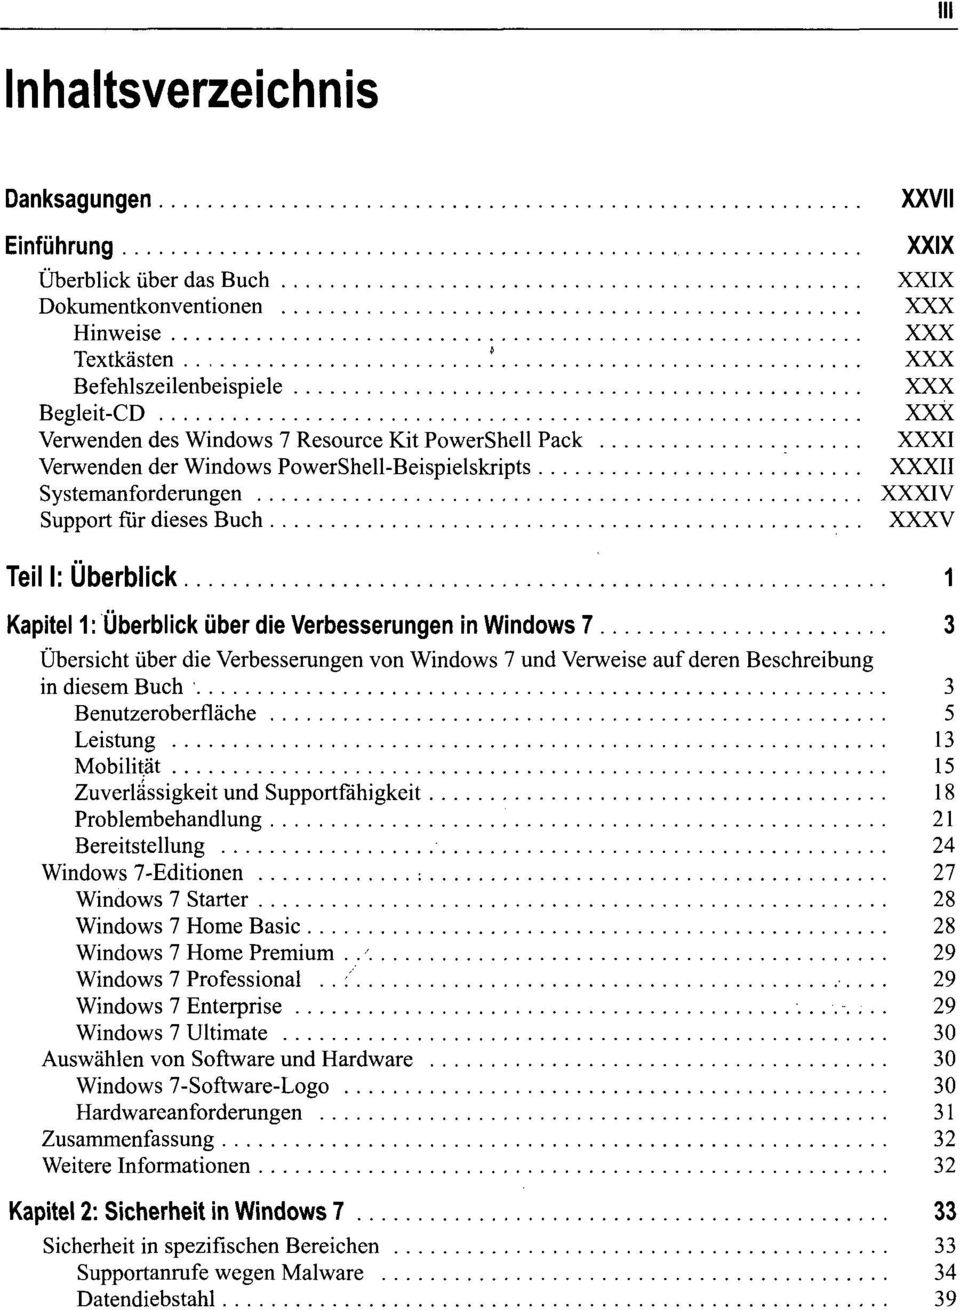 dieses Buch XXXV Teil I: Überblick 1 Kapitel 1: Überblick über die Verbesserungen in Windows 7 3 Übersicht über die Verbesserungen von Windows 7 und Verweise auf deren Beschreibung in diesem Buch 3